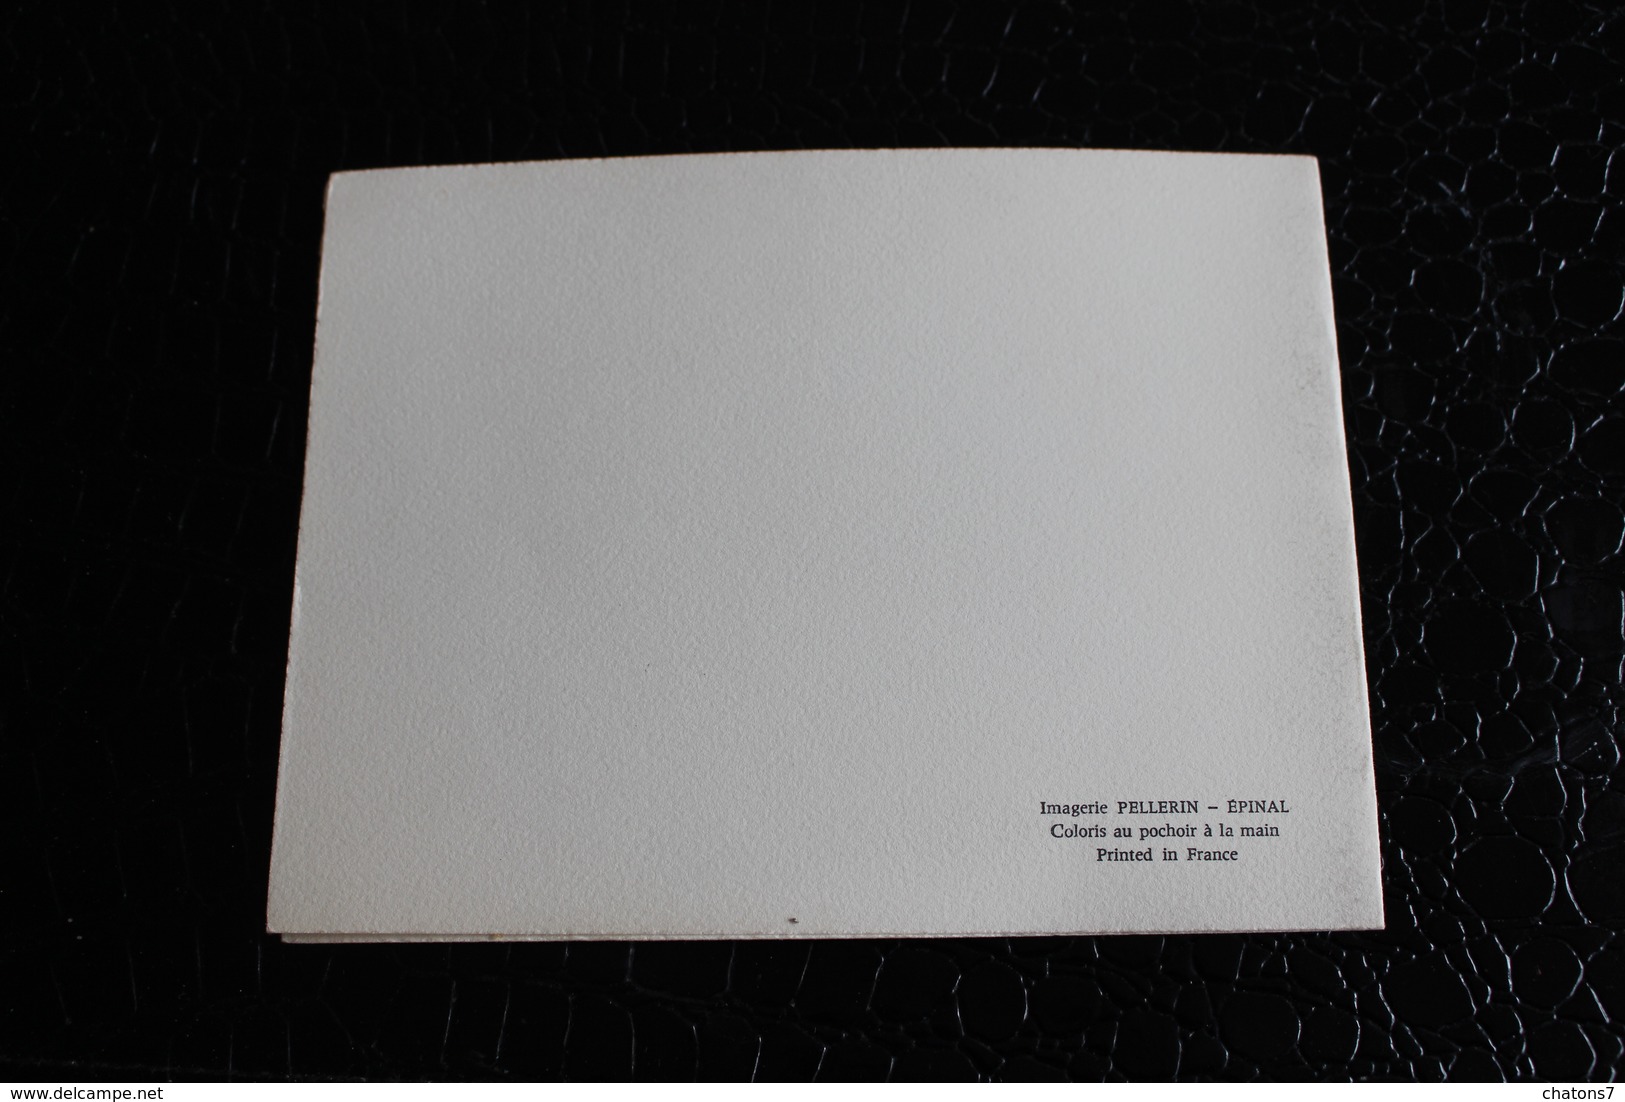 AN-241-France-Lot de 16 cartes-6 de 18 x 19 et 10 cartes 15 x 10,5 imprimées par Imagerie "Pellerin" Epinal-Papier velin